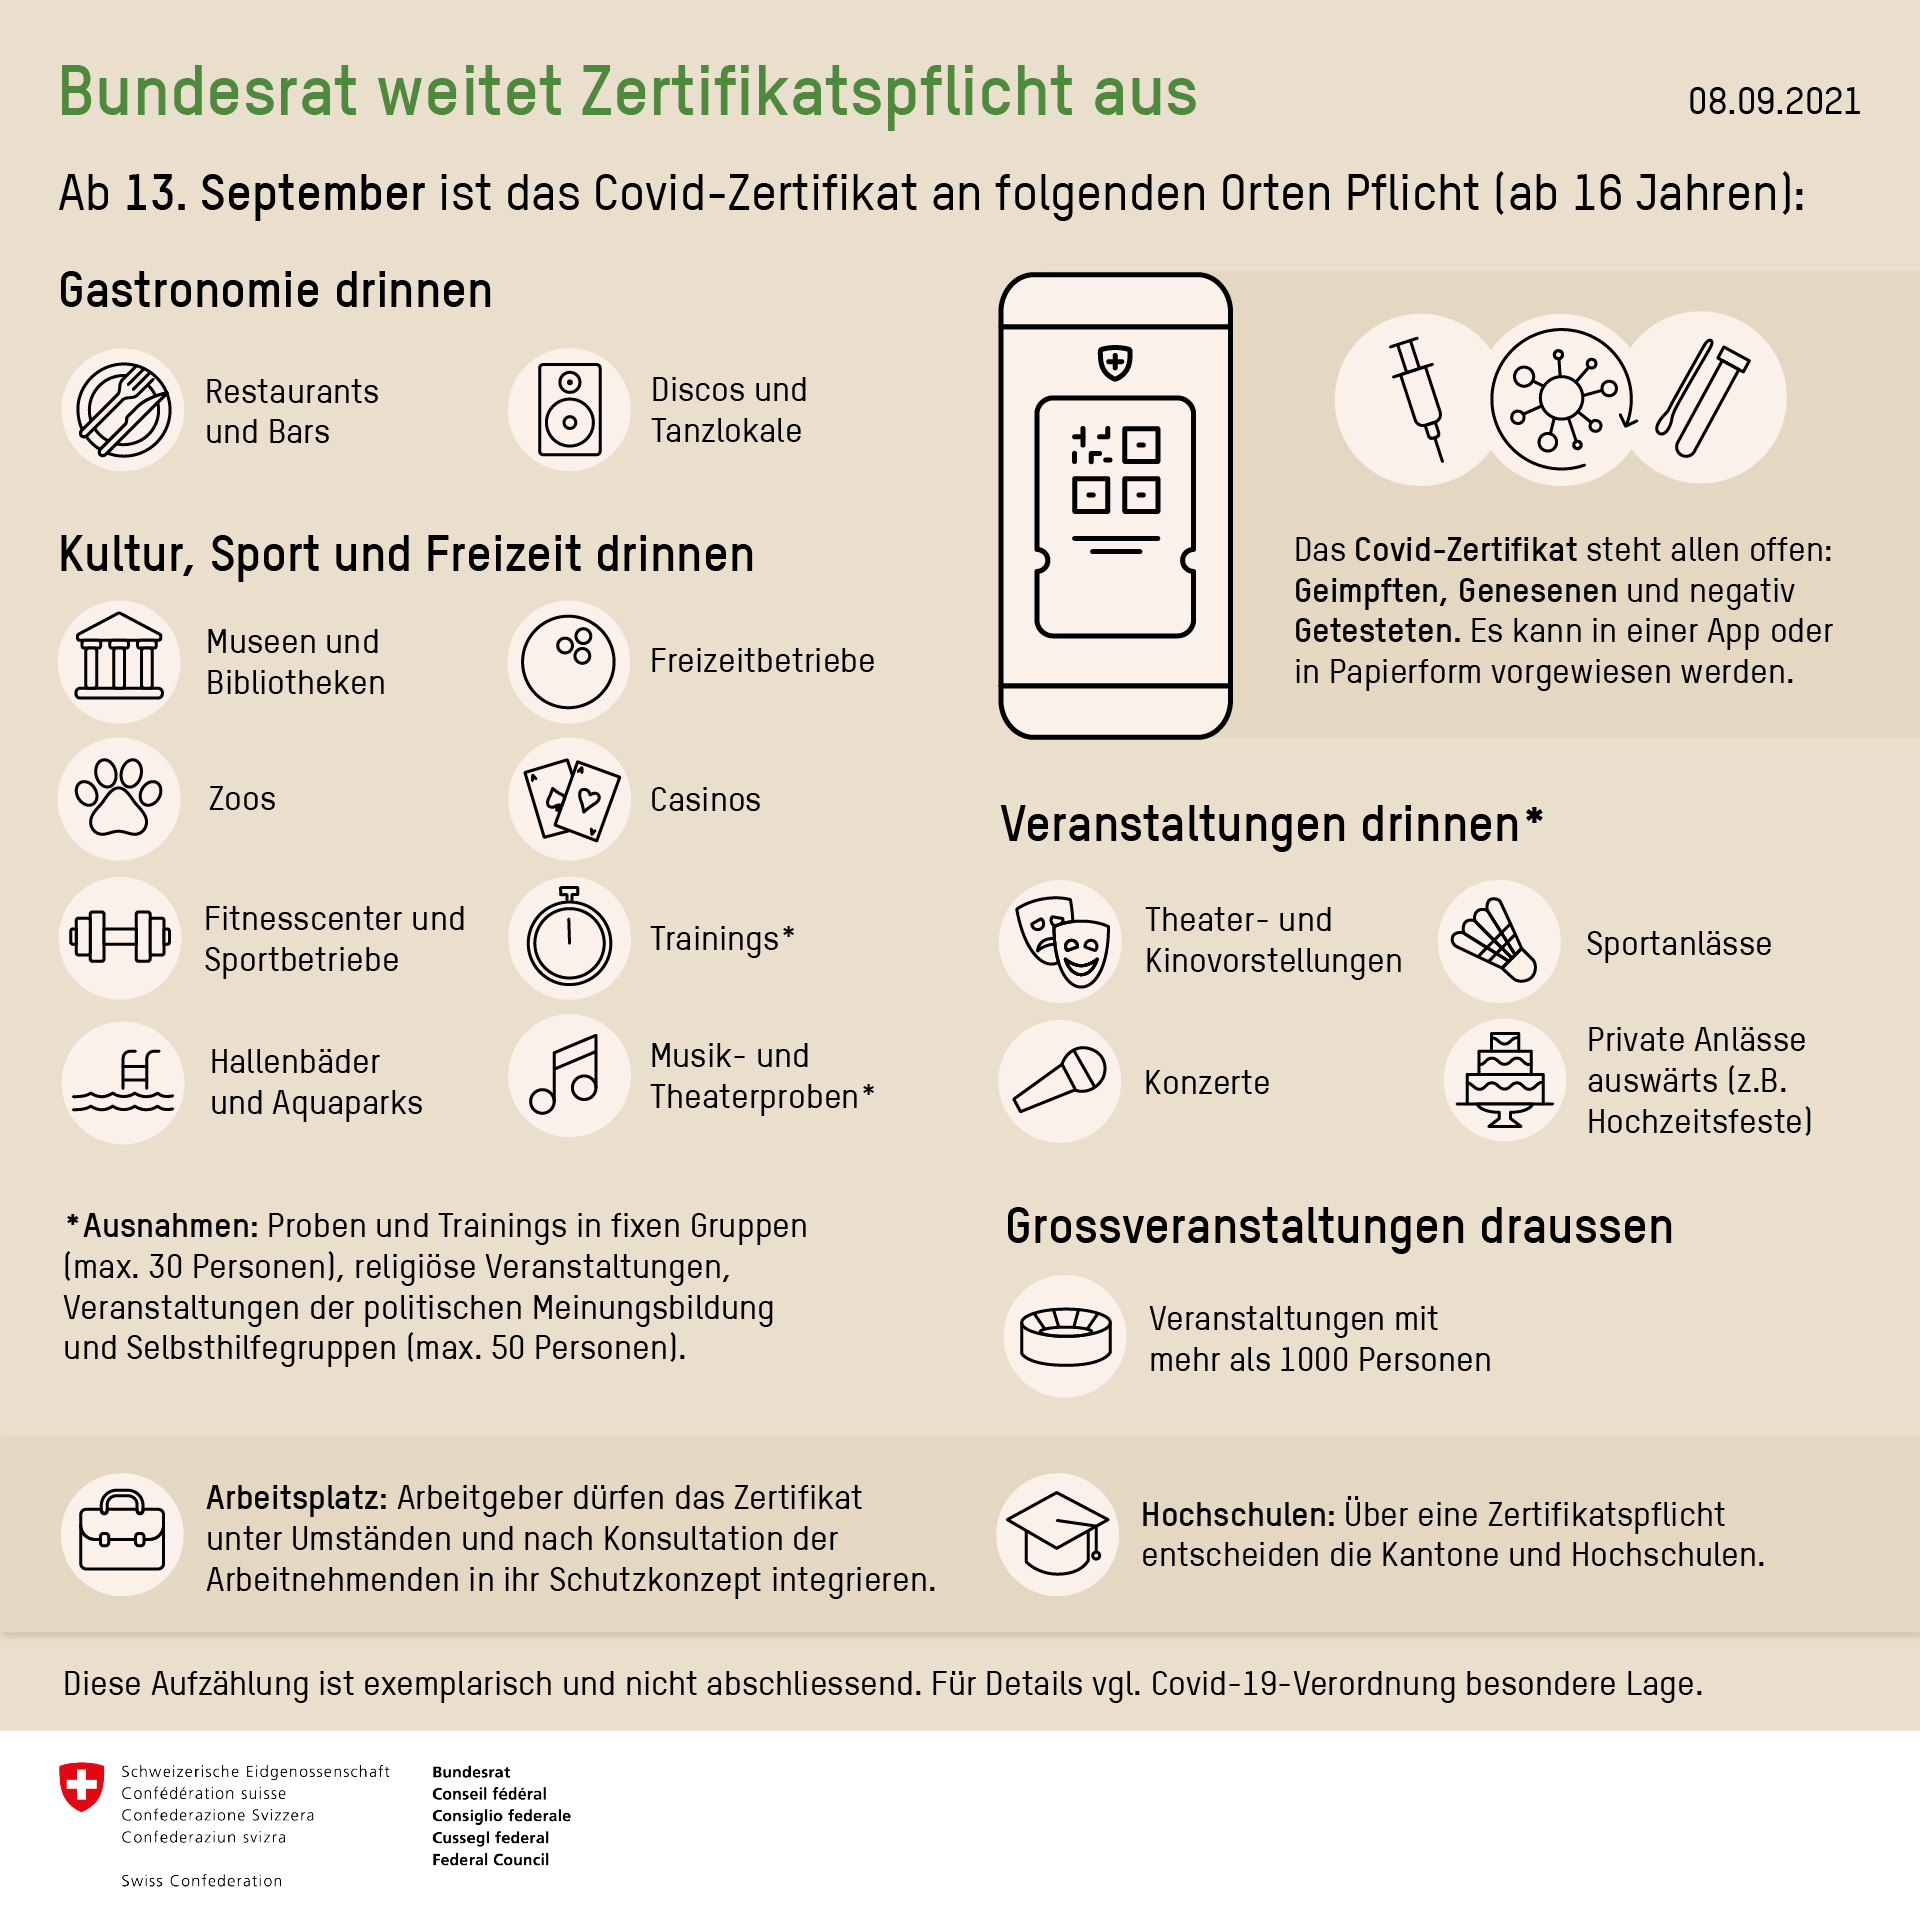 Erweiterte Zertifikatspflicht ab 13. September 2021 in der Schweiz. Bundesamt für Gesundheit BAG, 08.09.2021